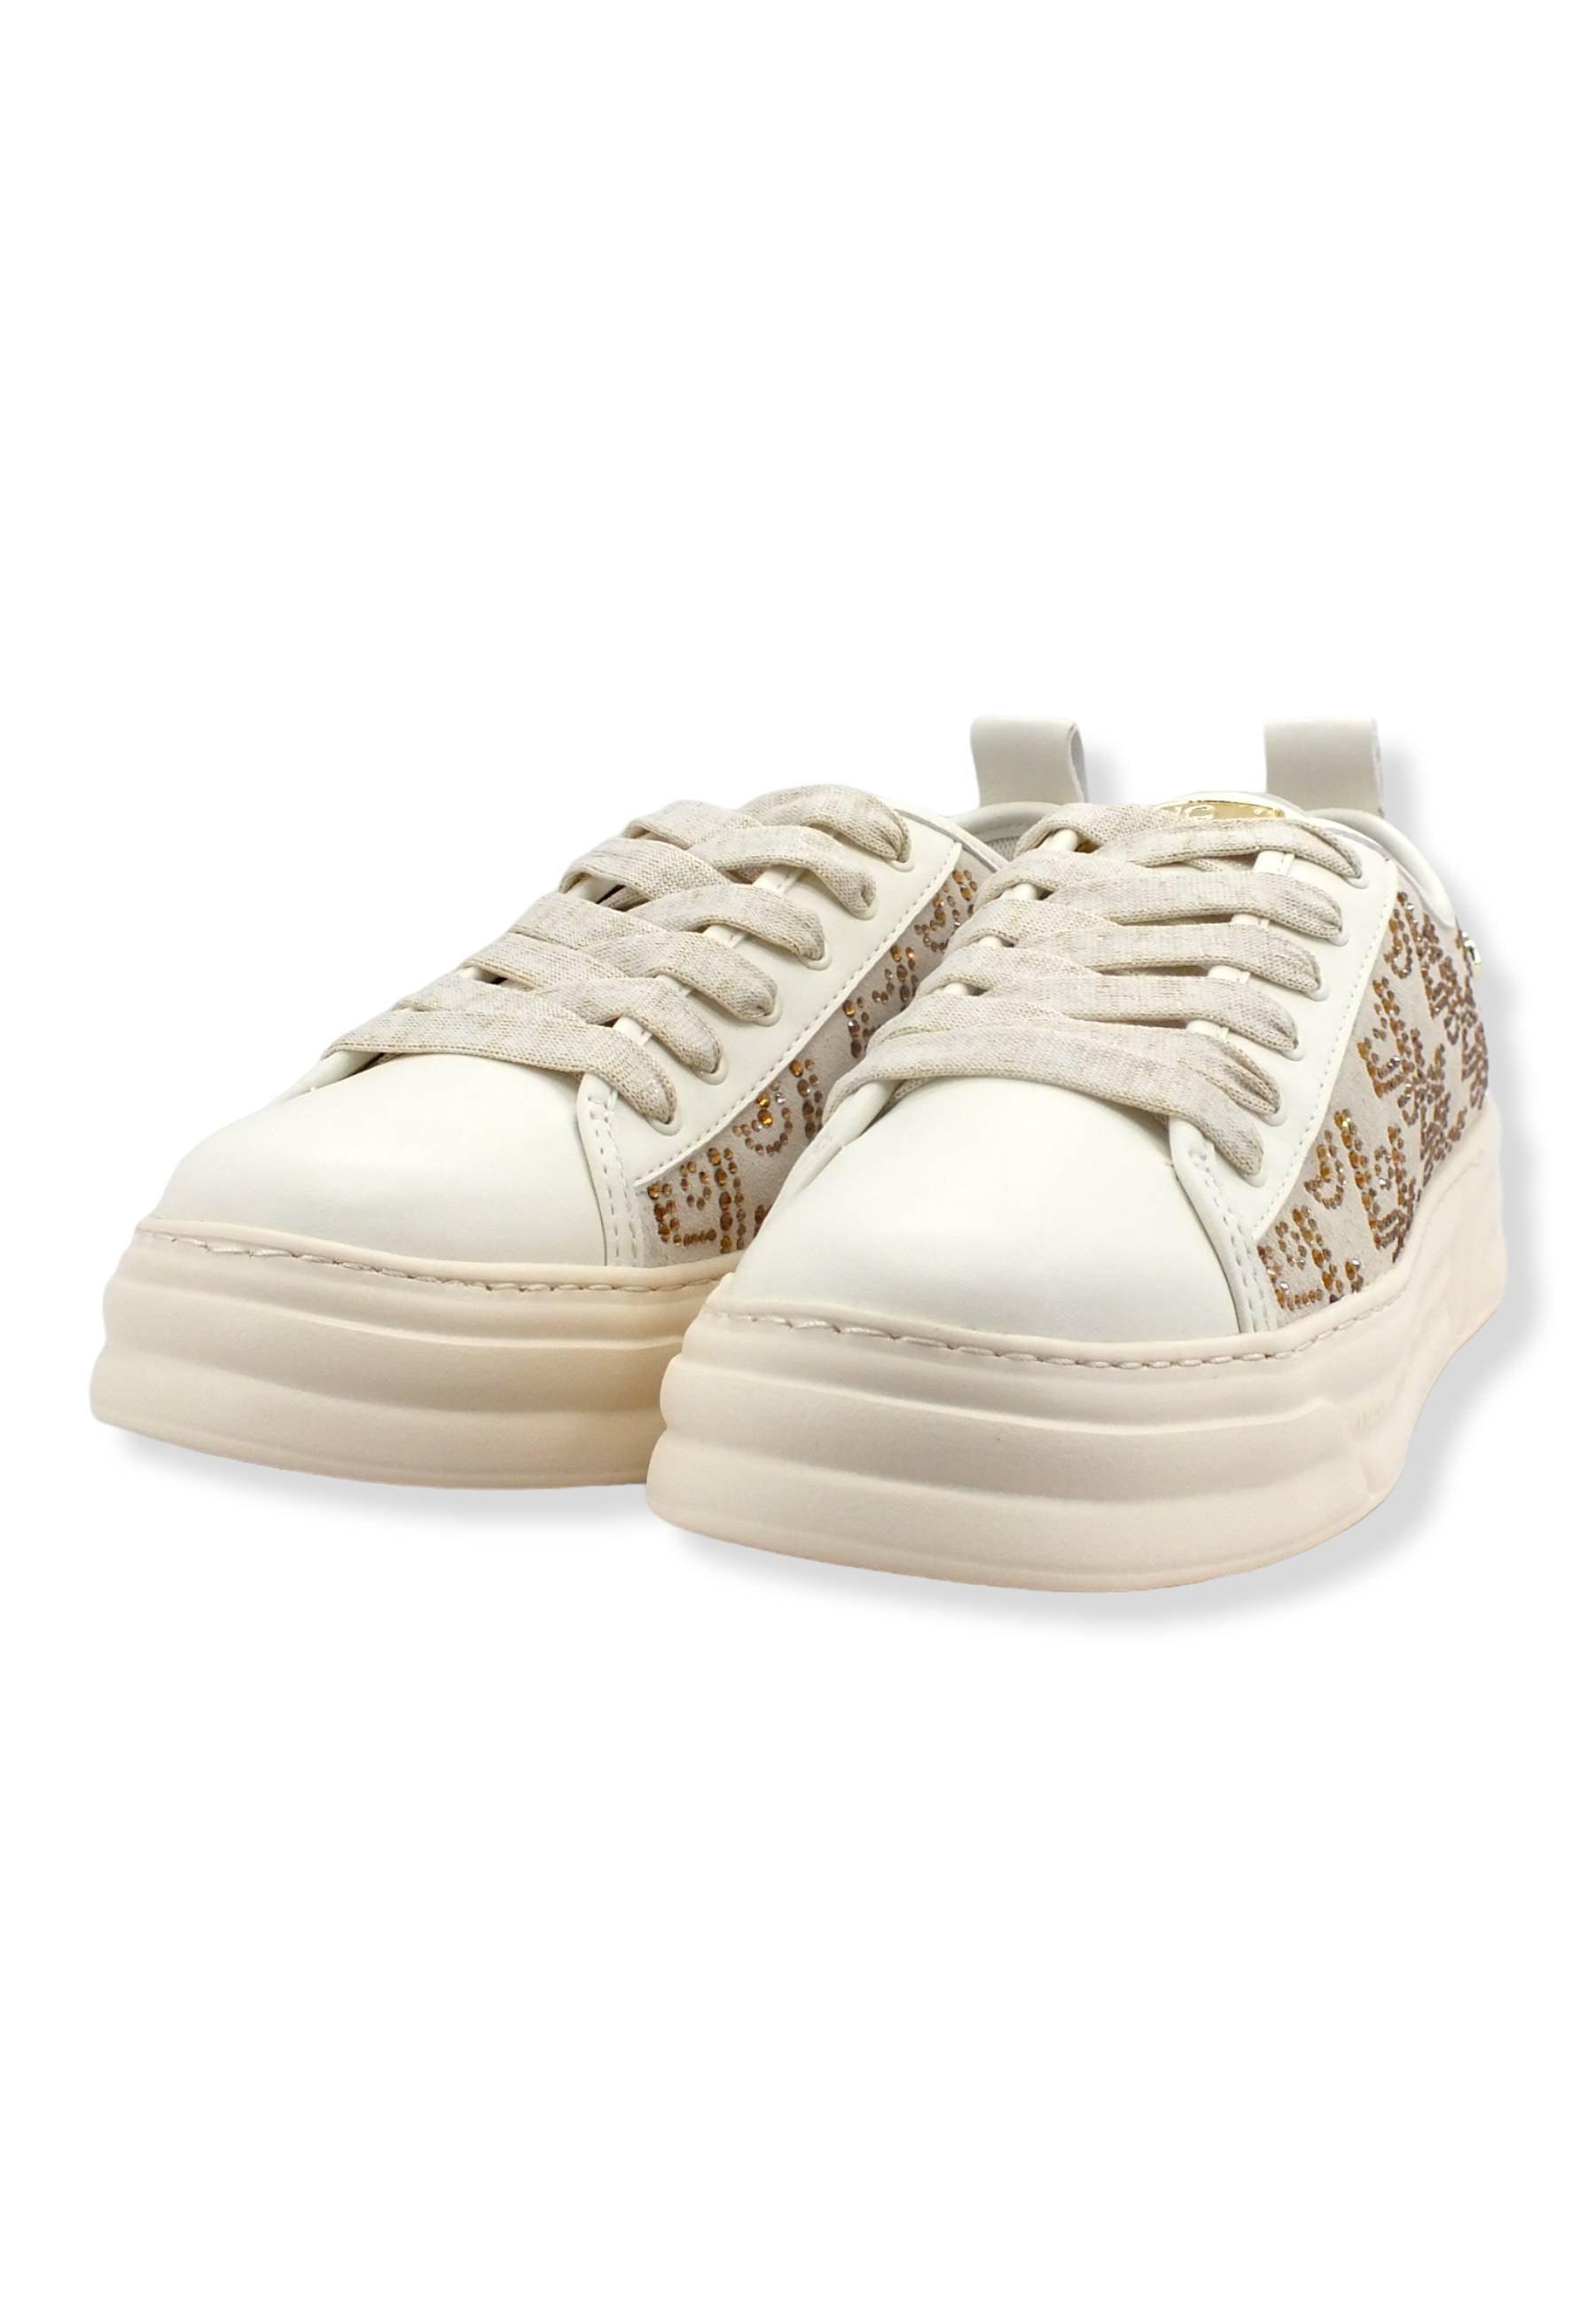 LIU JO Cleo-01 Sneaker Donna Rosa Conchiglia BF2069PX104 - Sandrini Calzature e Abbigliamento